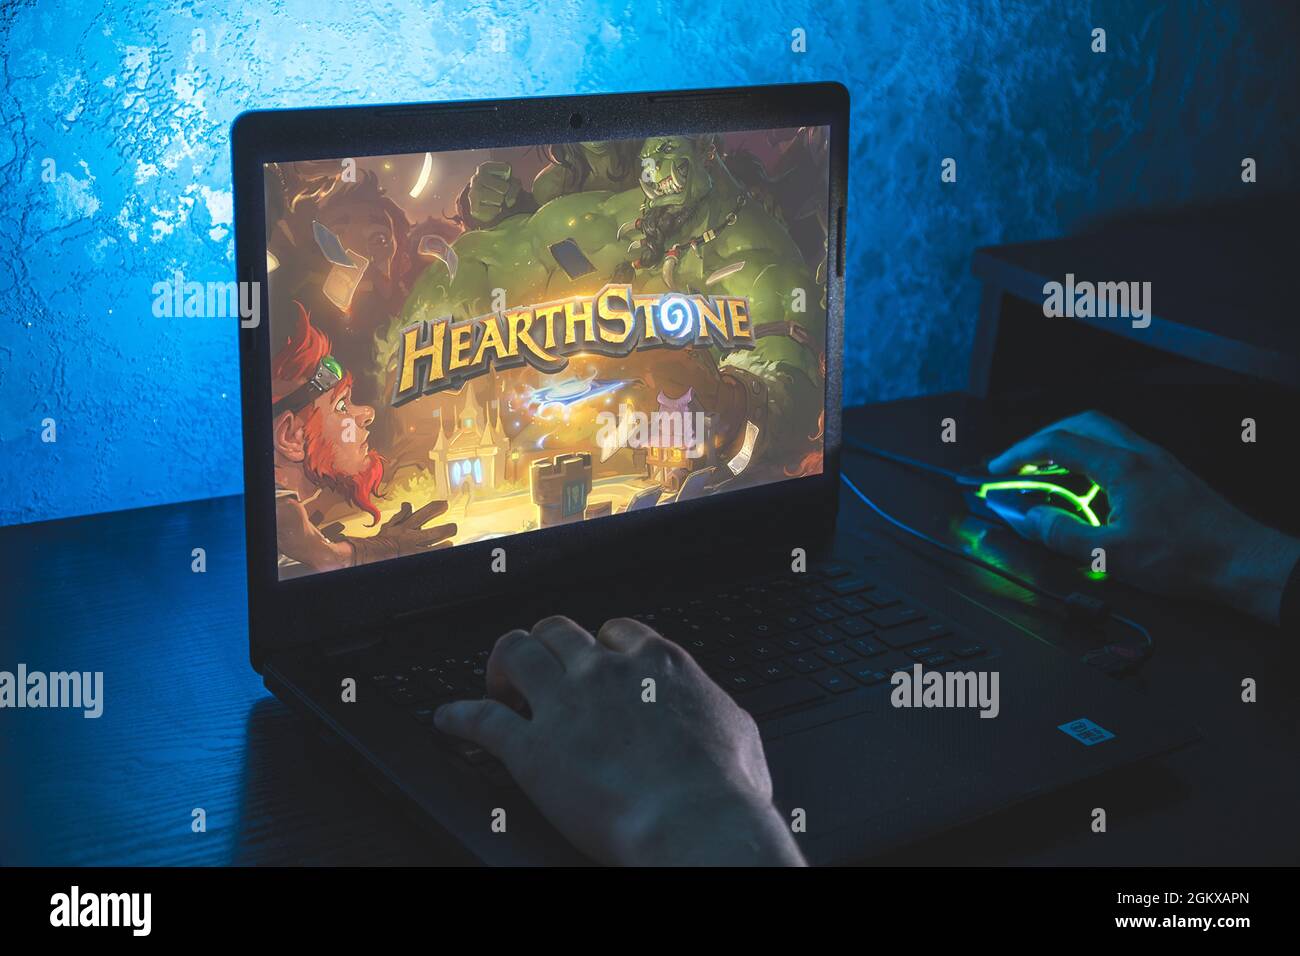 Hearthstone ist ein kostenloses Online-Kartenspiel mit digitalen Sammelkarten. Video-Computerspiel. Mann spielen Videospiel auf Laptop Stockfoto